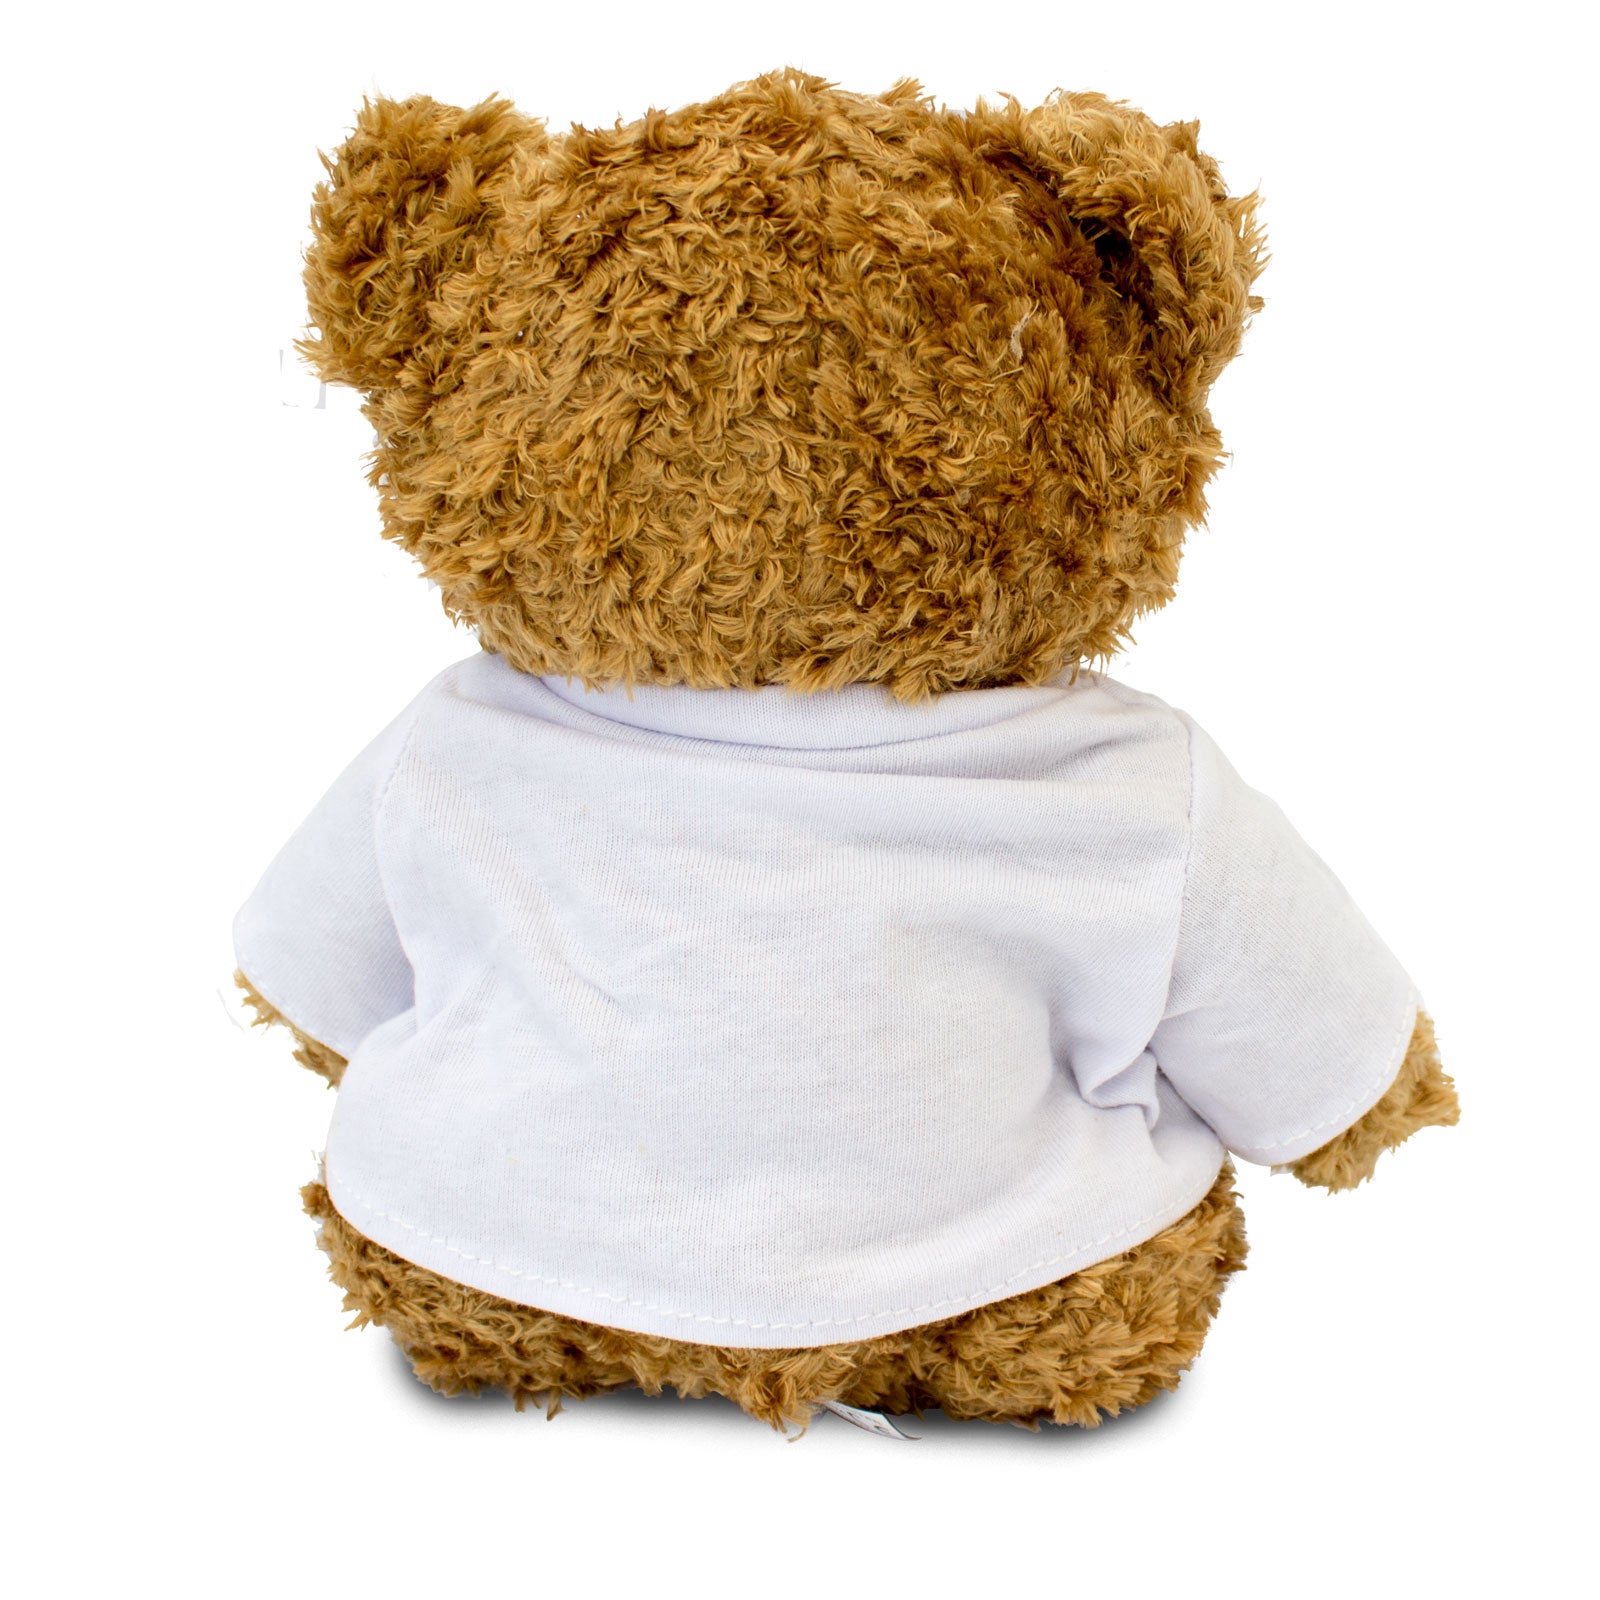 Get Well Soon Adrian - Teddy Bear